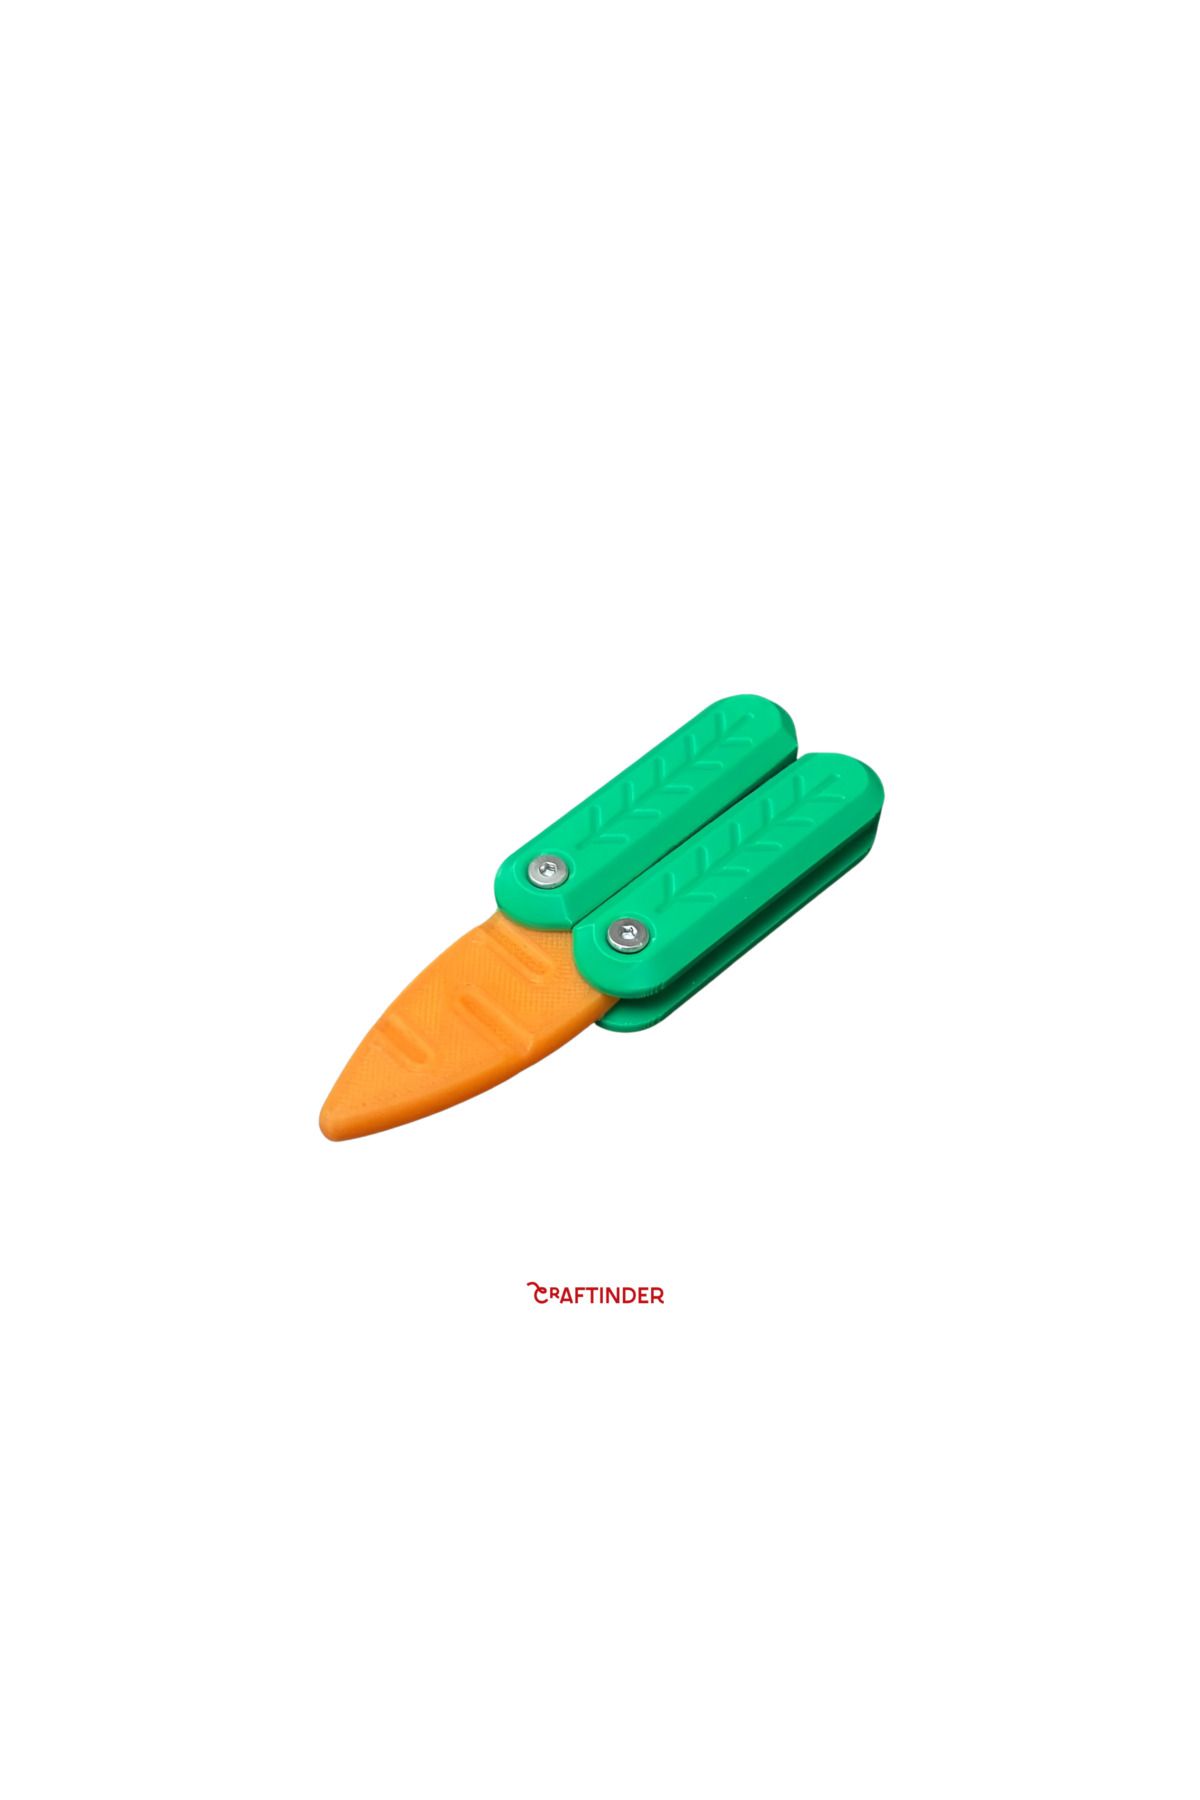 Craftinder Stres Bıçağı Yetişkin Ve Çocuklara Uygun El Oyuncağı Kelebek Mini Havuç Bıçak